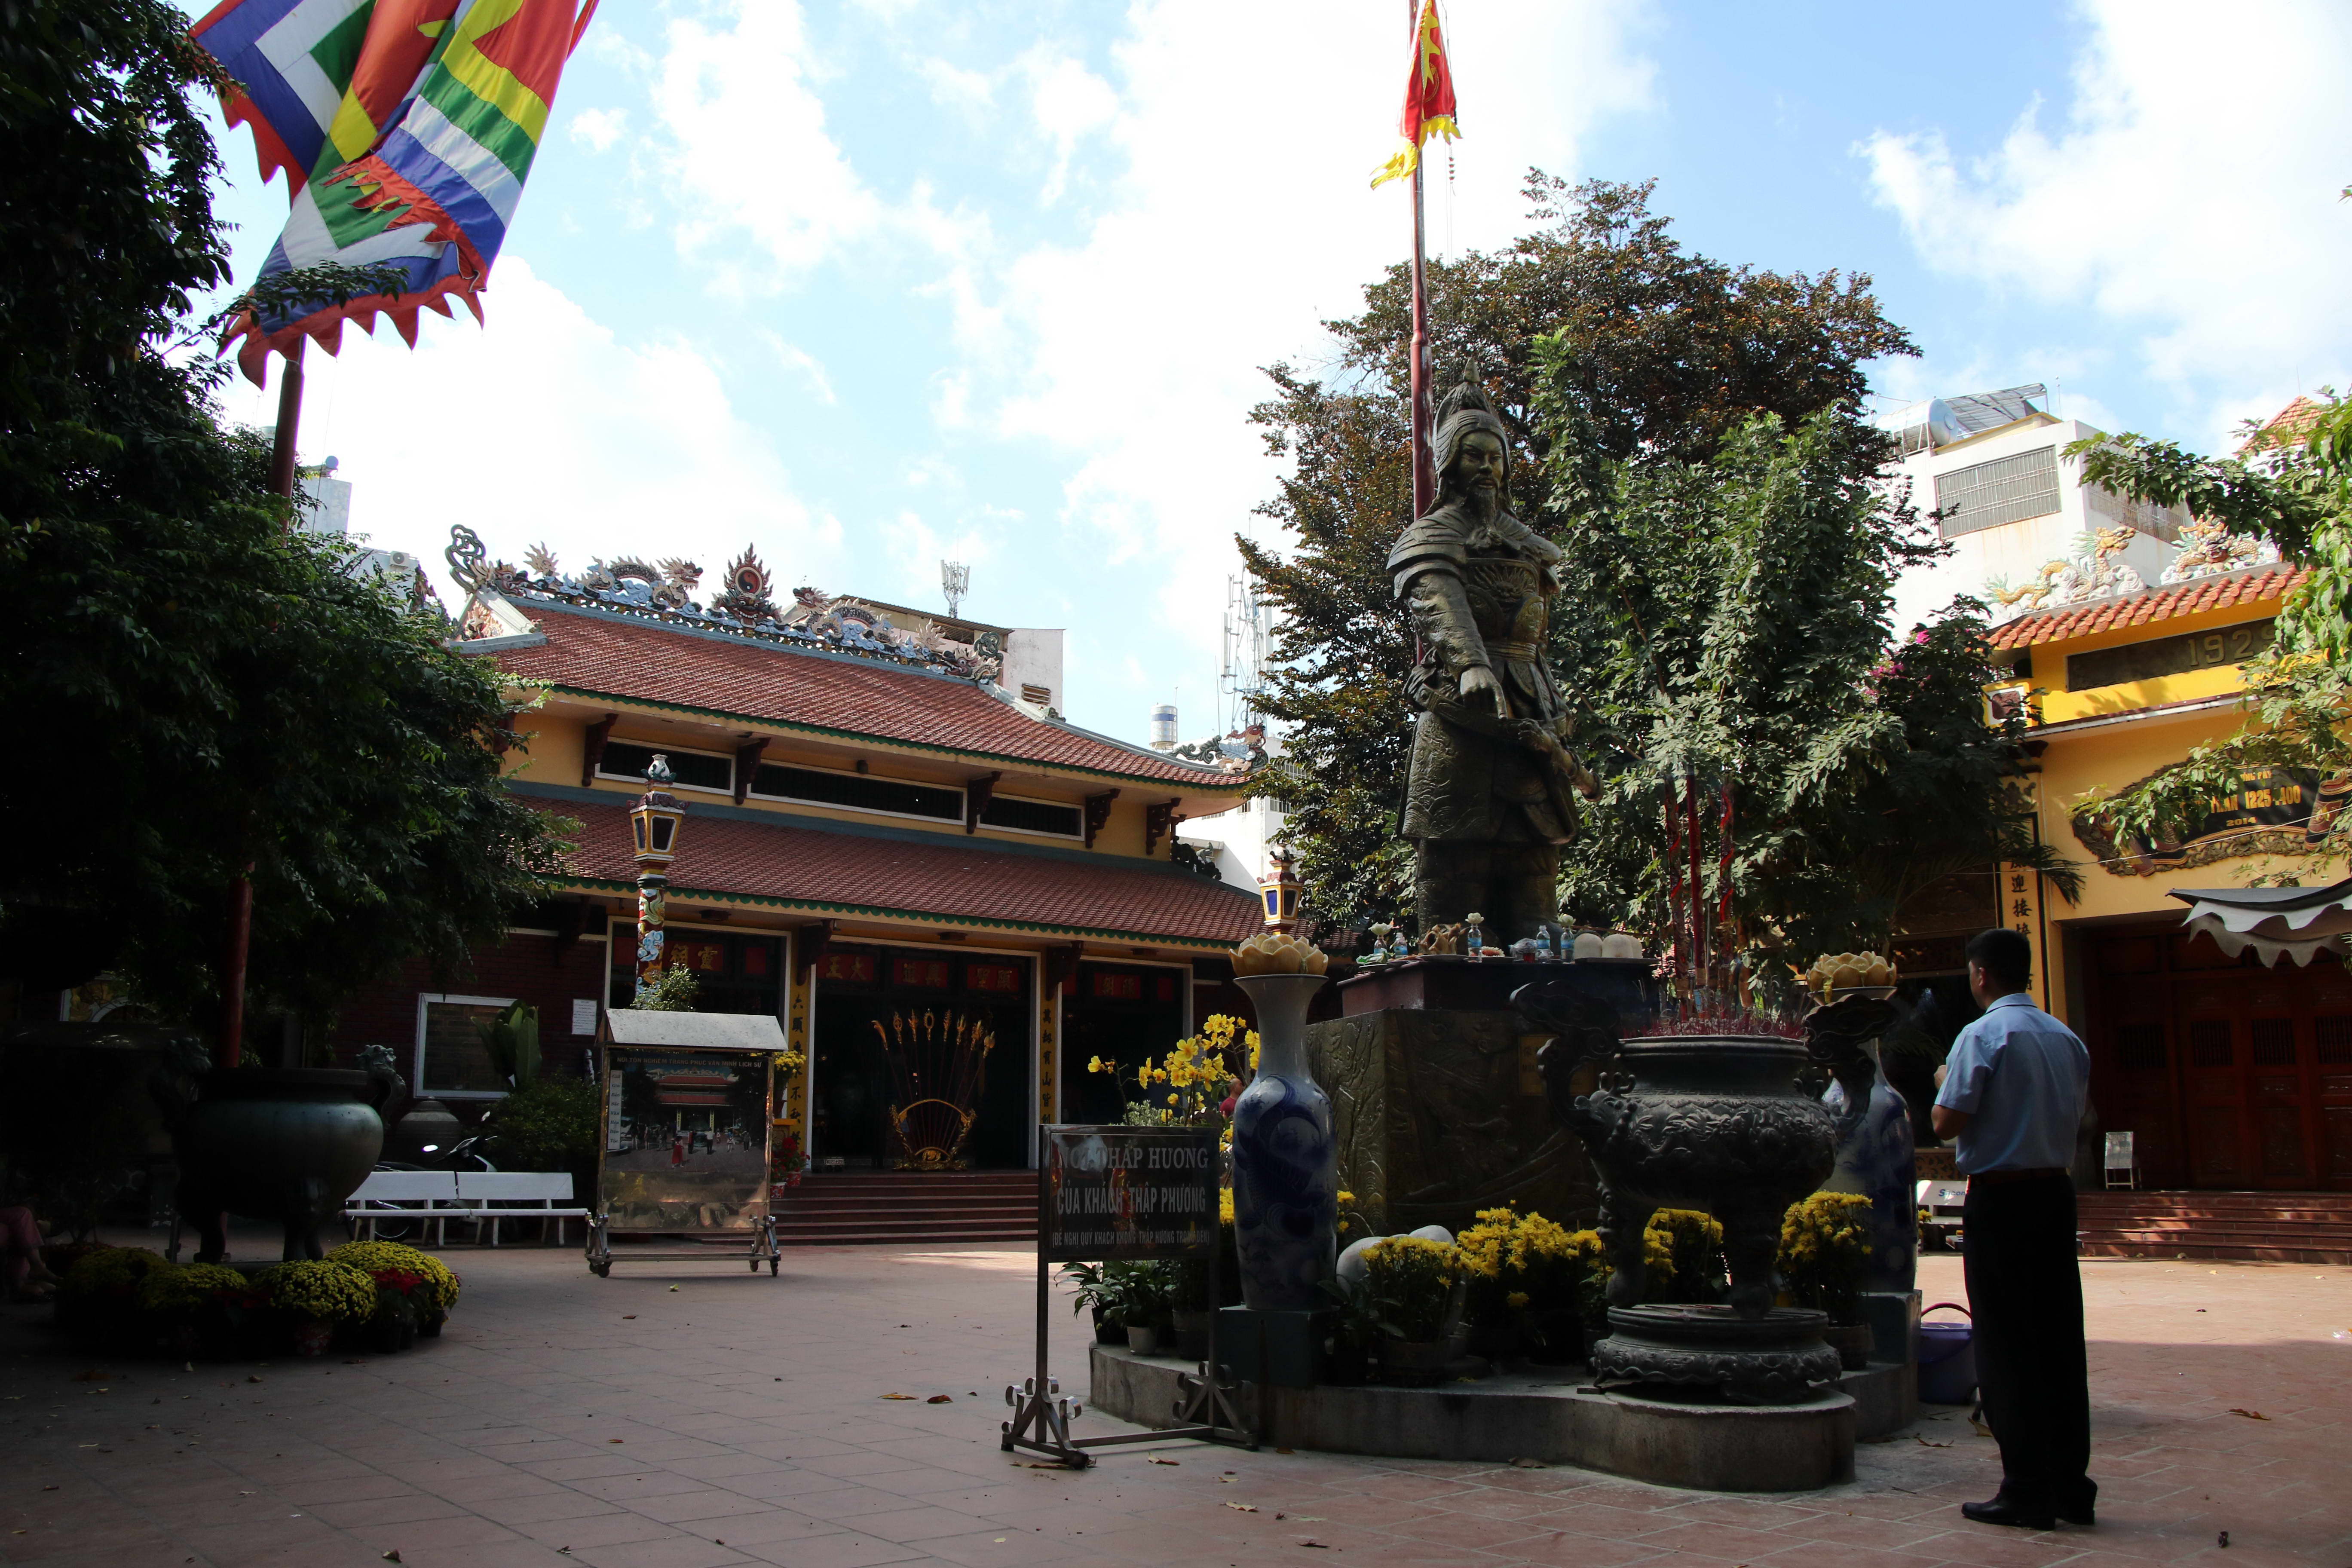 Trong khuôn viên đền thờ Đức thánh Trần Hưng Đạo, Phòng trưng bày thời Trần 1225 - 1400, được xây dựng kiên cố từ năm 2014